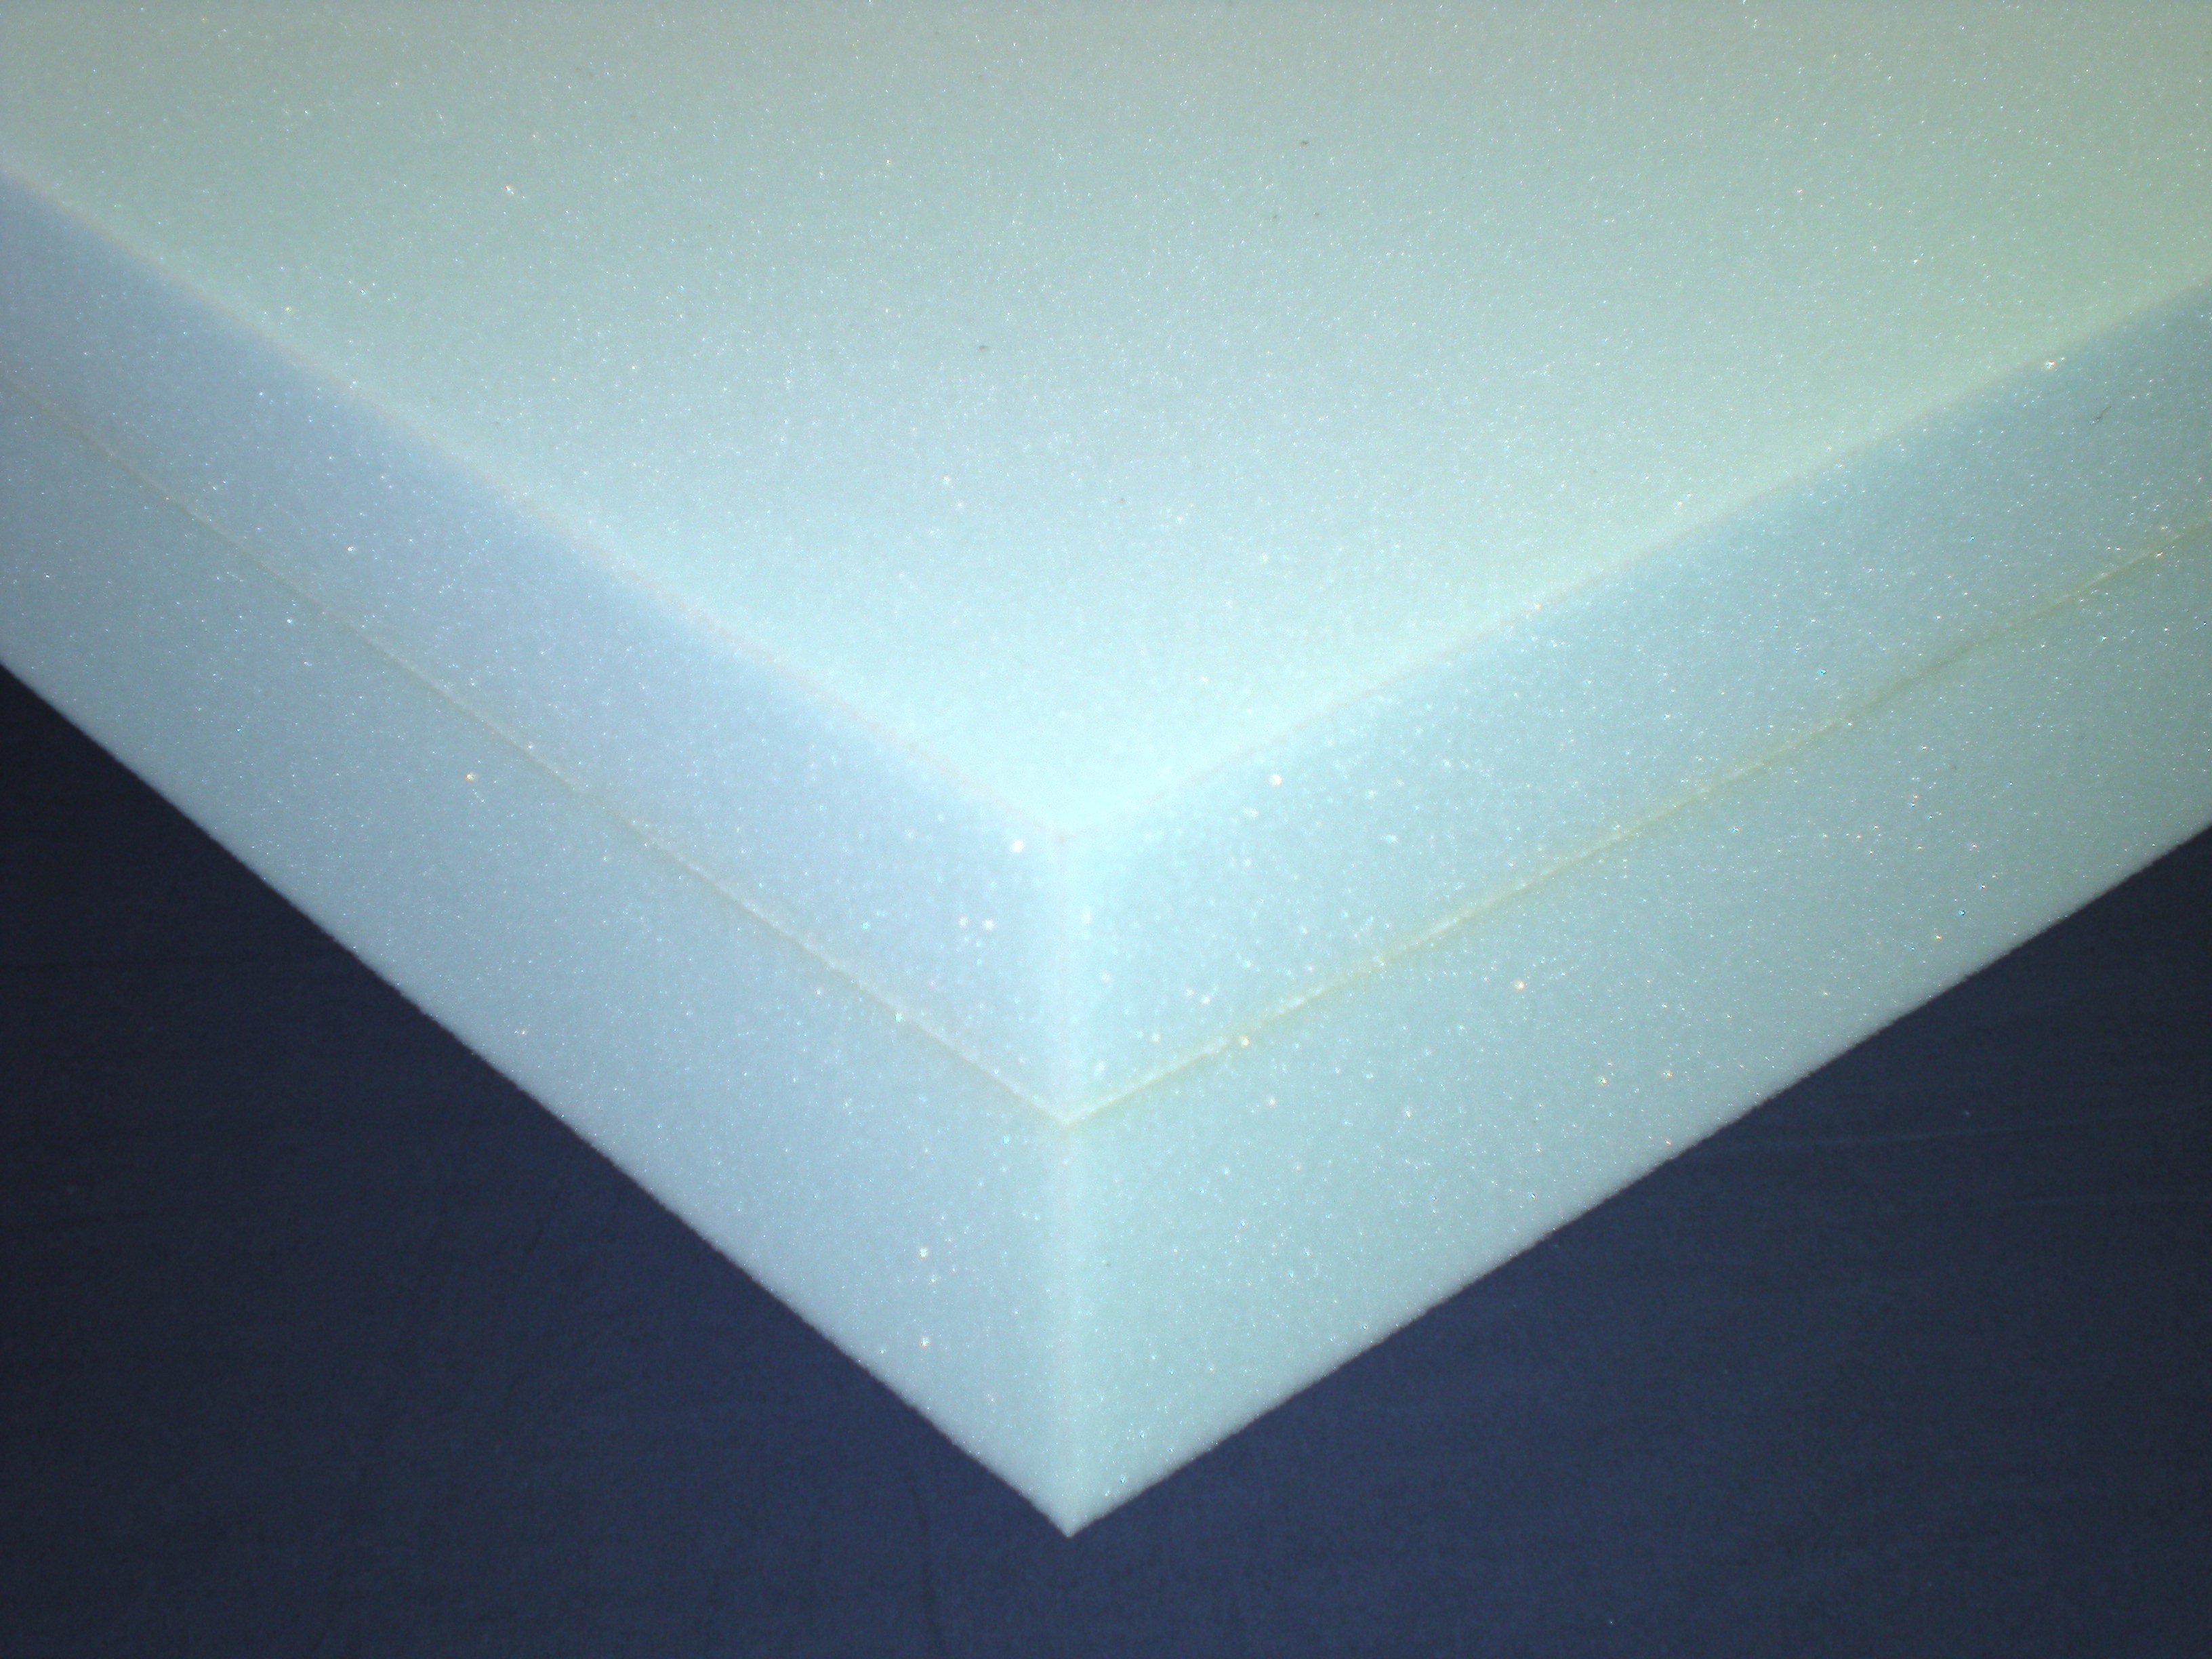 comfort foam supplies high density foam